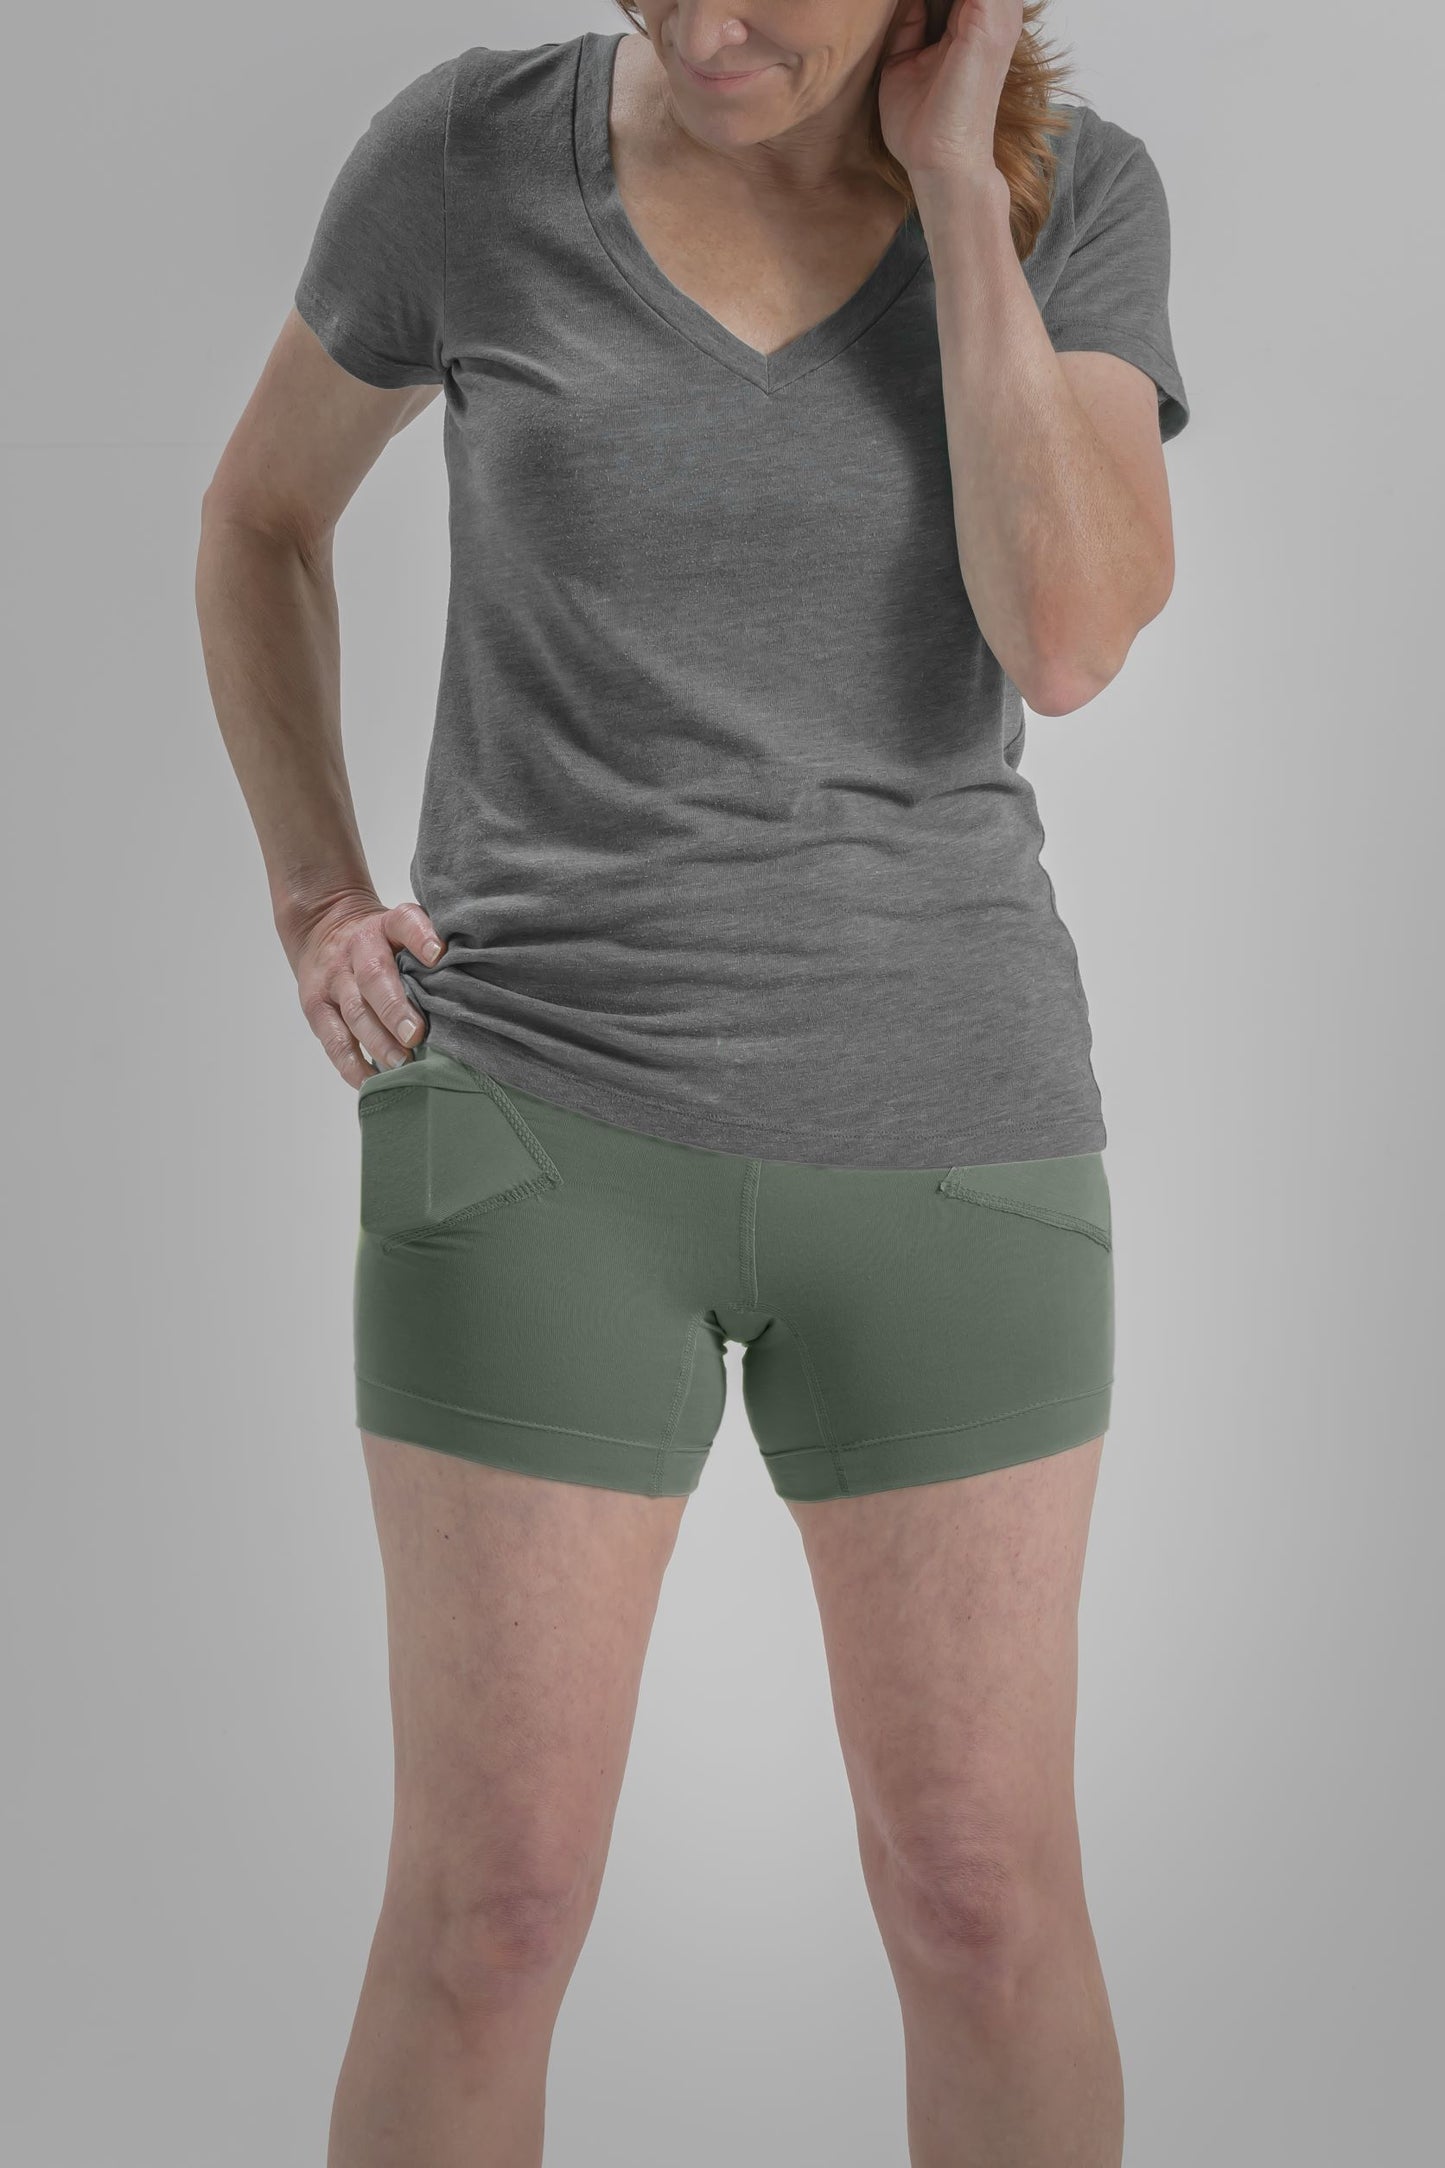 Women's Everyday Stretch Underwear with Insulin Pump Pockets